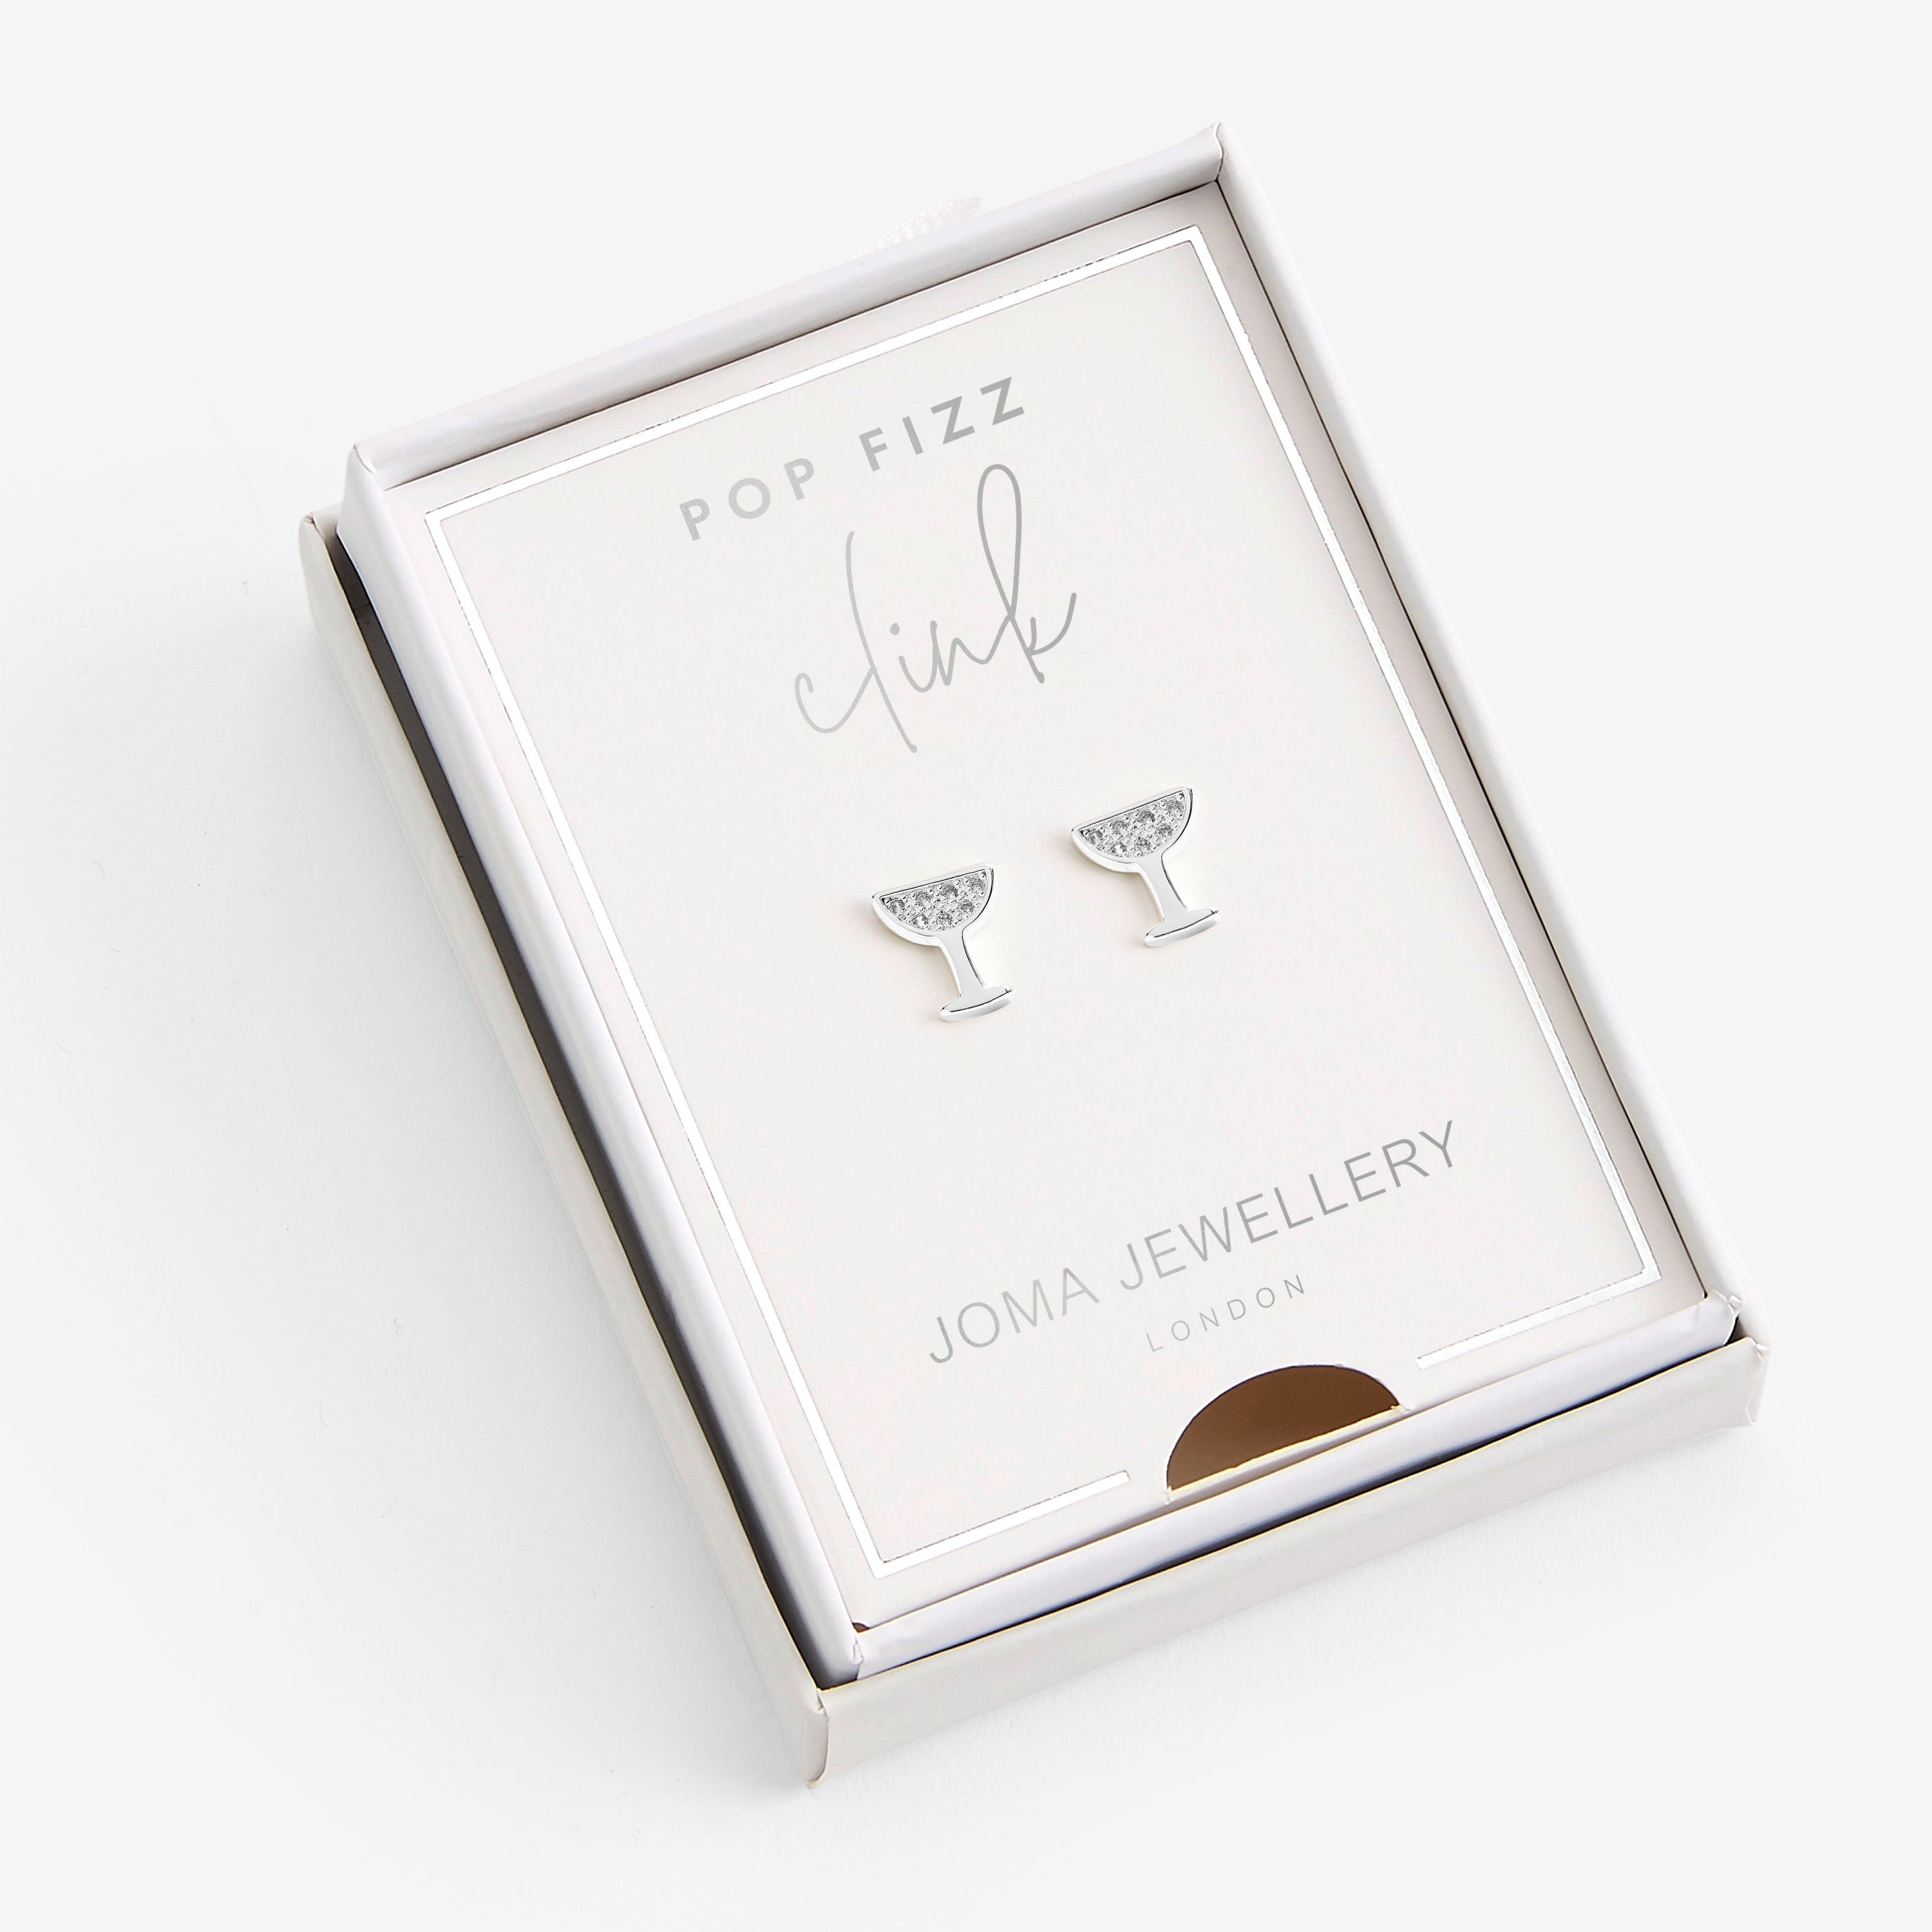 Joma Jewellery Earrings Joma Jewellery Treasure The Little Things - Pop Fizz Clink Boxed Earrings